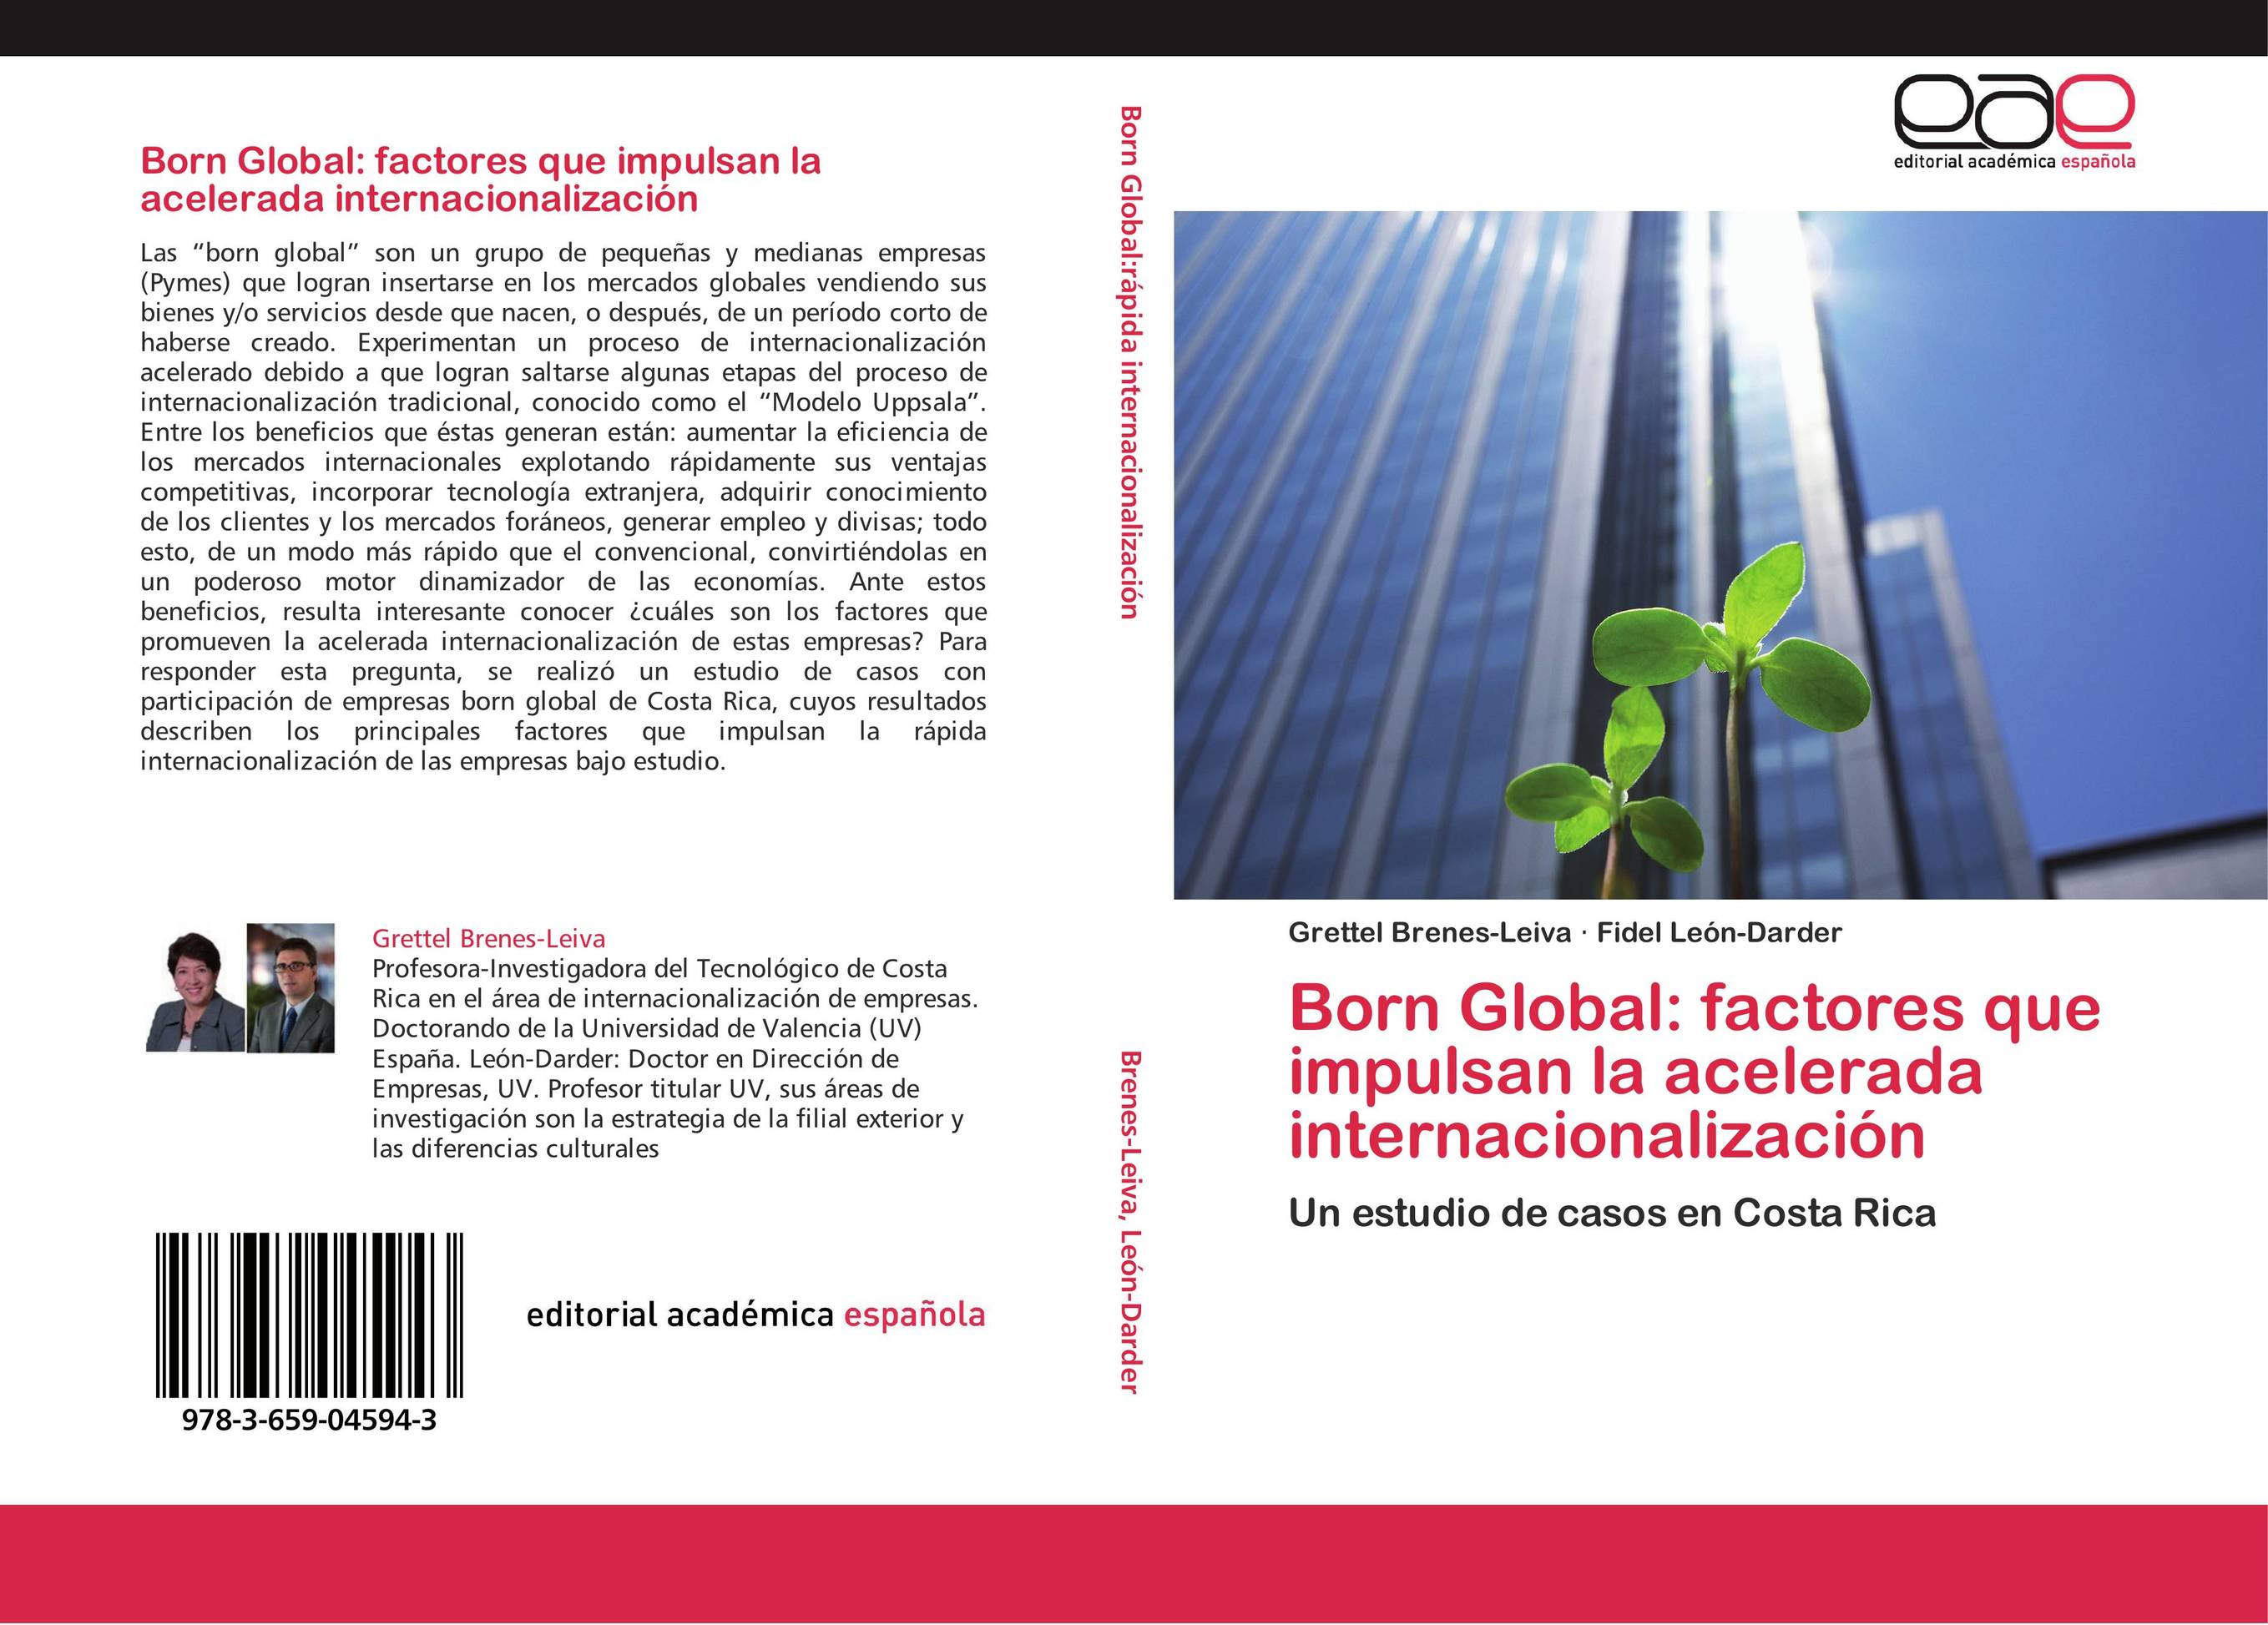 Born Global: factores que impulsan la acelerada internacionalización